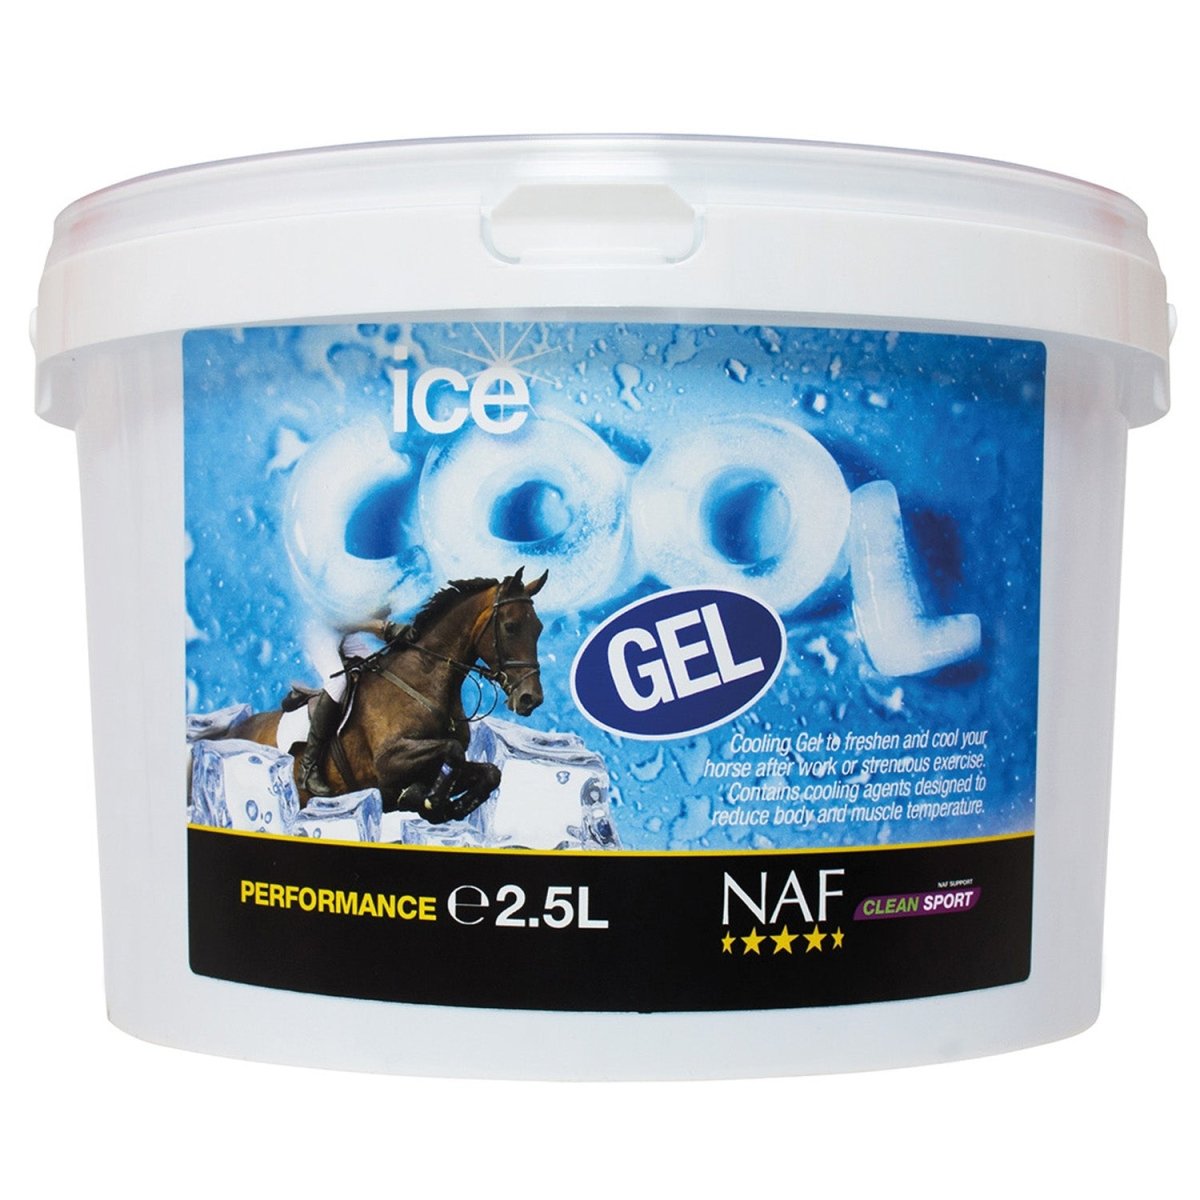 Naf Ice Cool Gel - 2.5Lt -